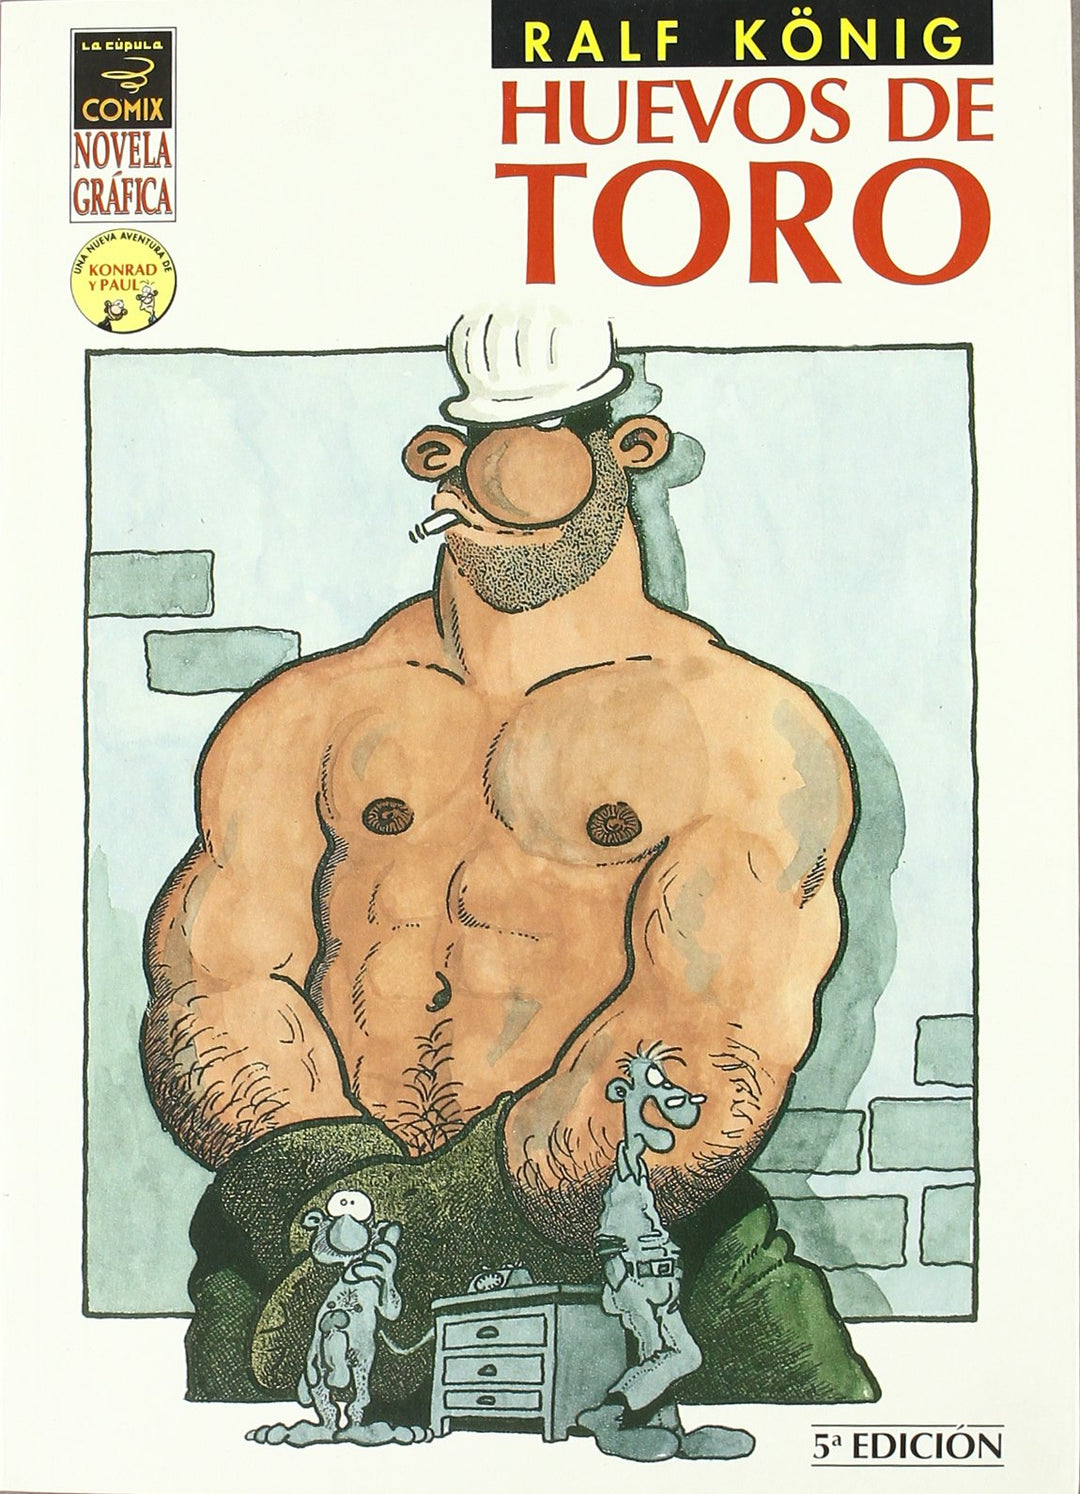 Huevos De Toro by Ralf Konig TPB - 5th Edition (Adult)